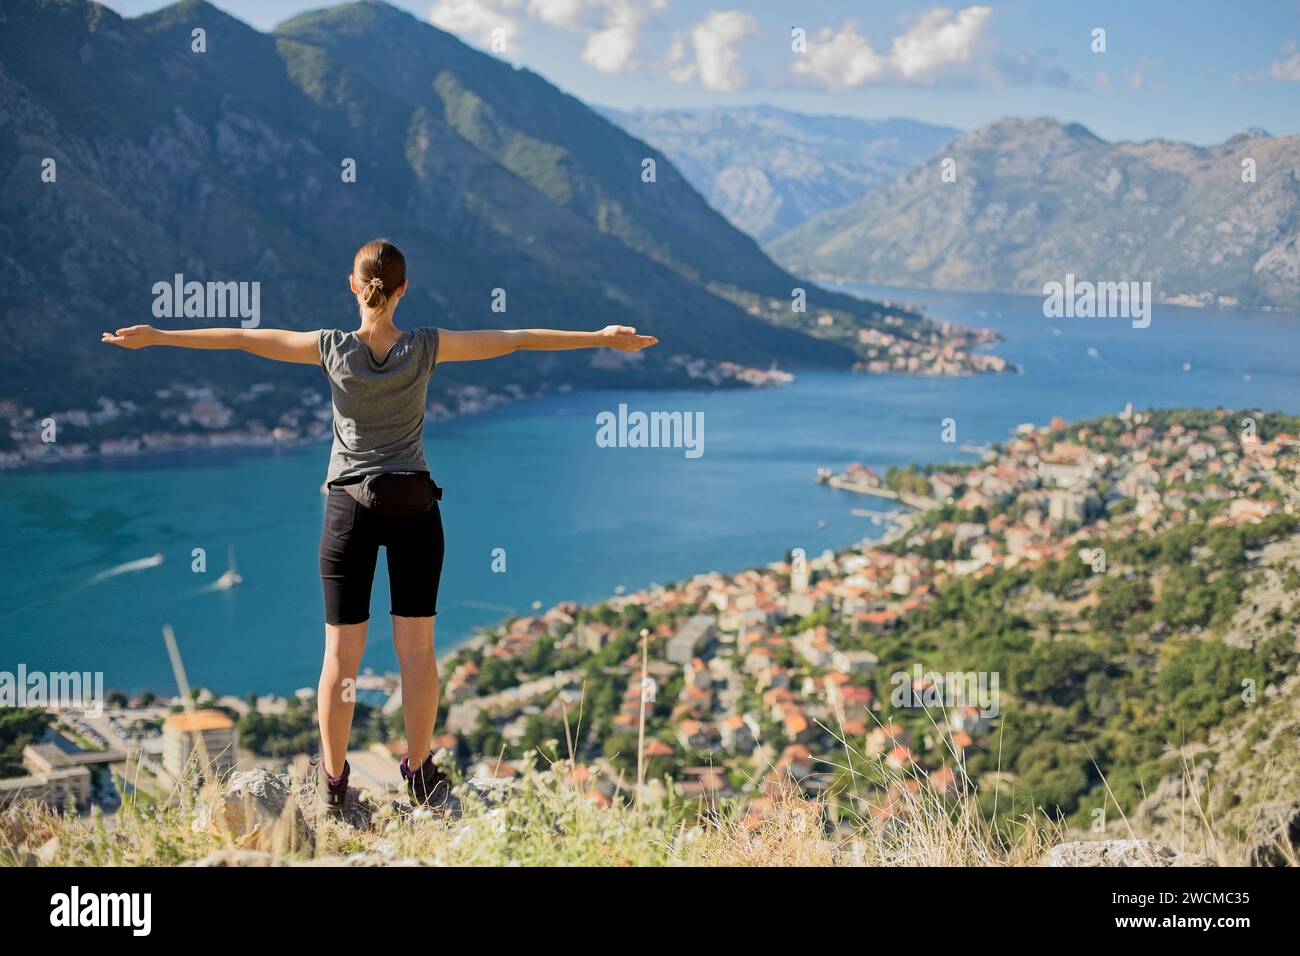 Un escursionista si erge a braccia aperte, abbracciando la vista mozzafiato della baia di Cattaro e delle montagne circostanti in Montenegro. Foto Stock